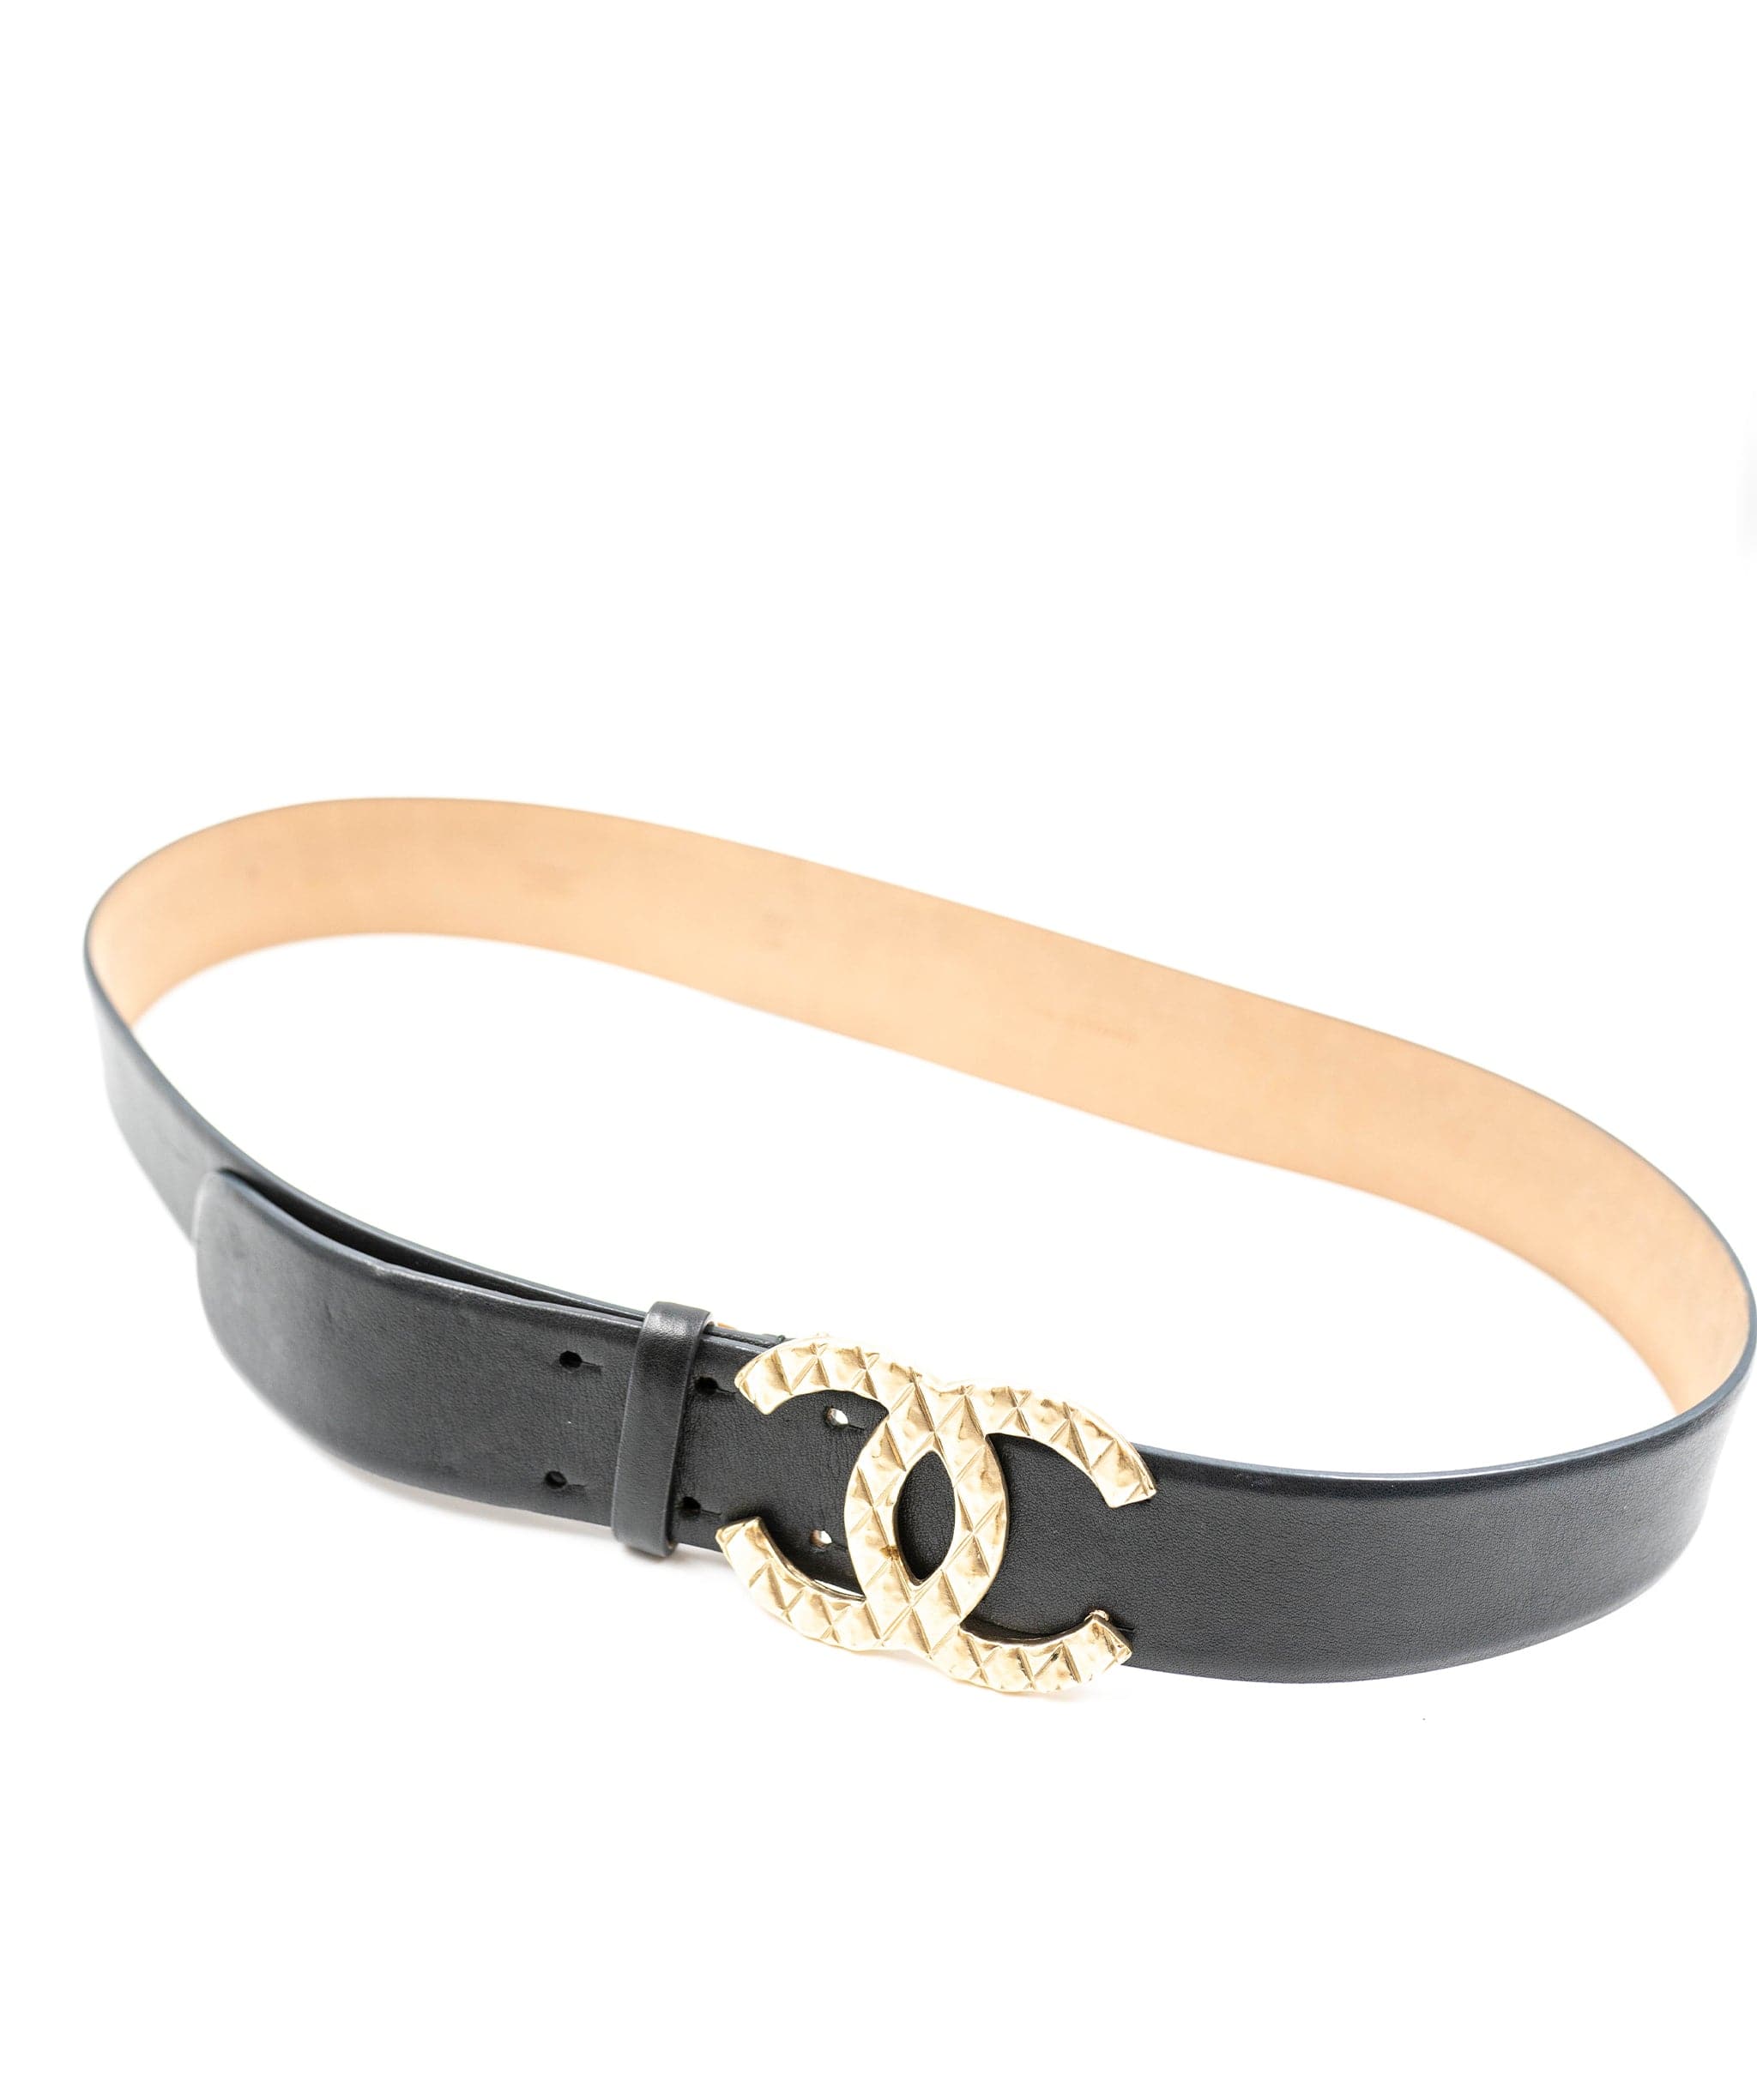 Chanel Chanel black leather belt ASL3376